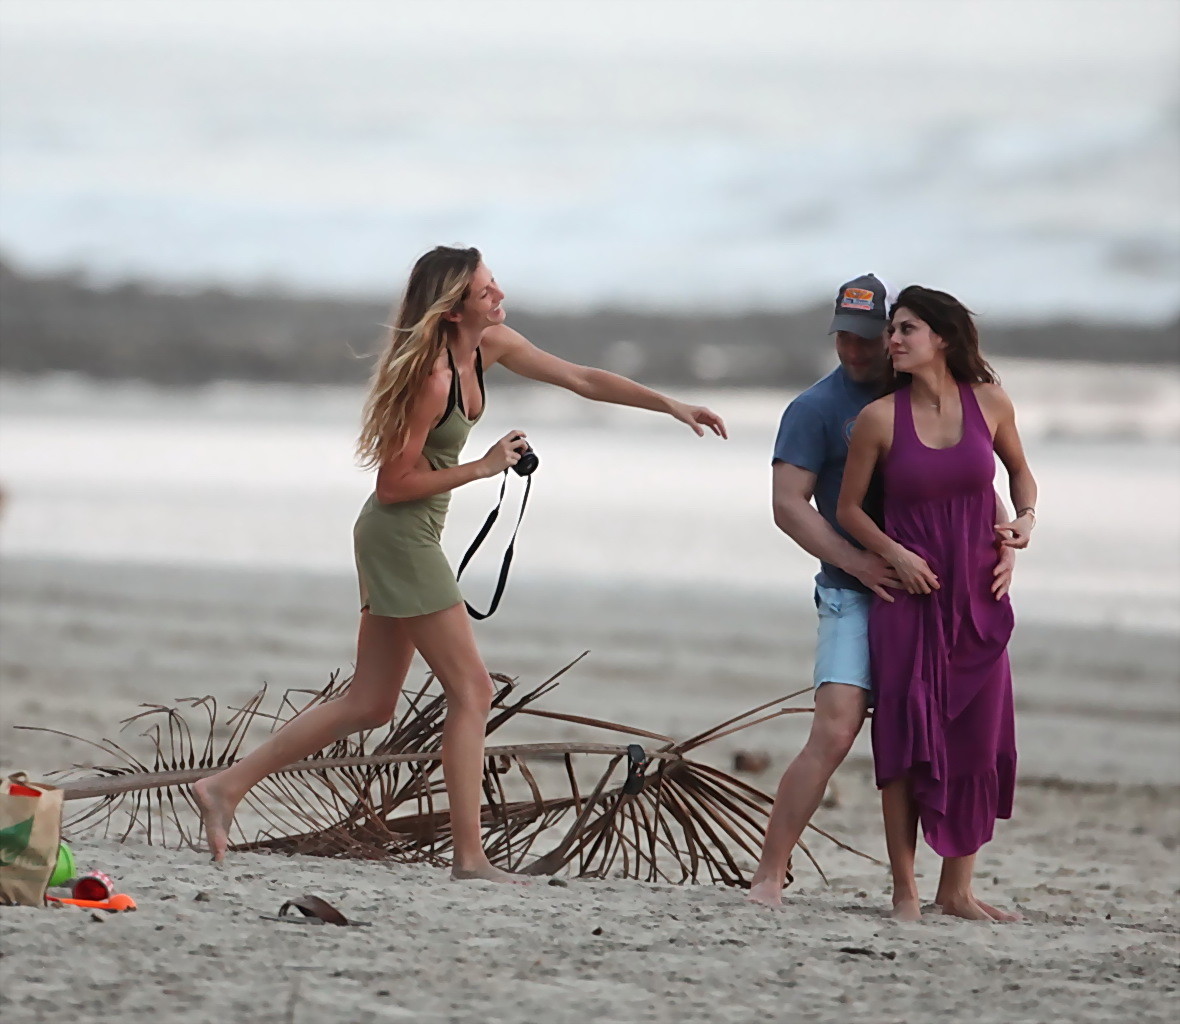 Gisele bundchen mostrando su delgado cuerpo en bikini en una playa de costa rica
 #75255597